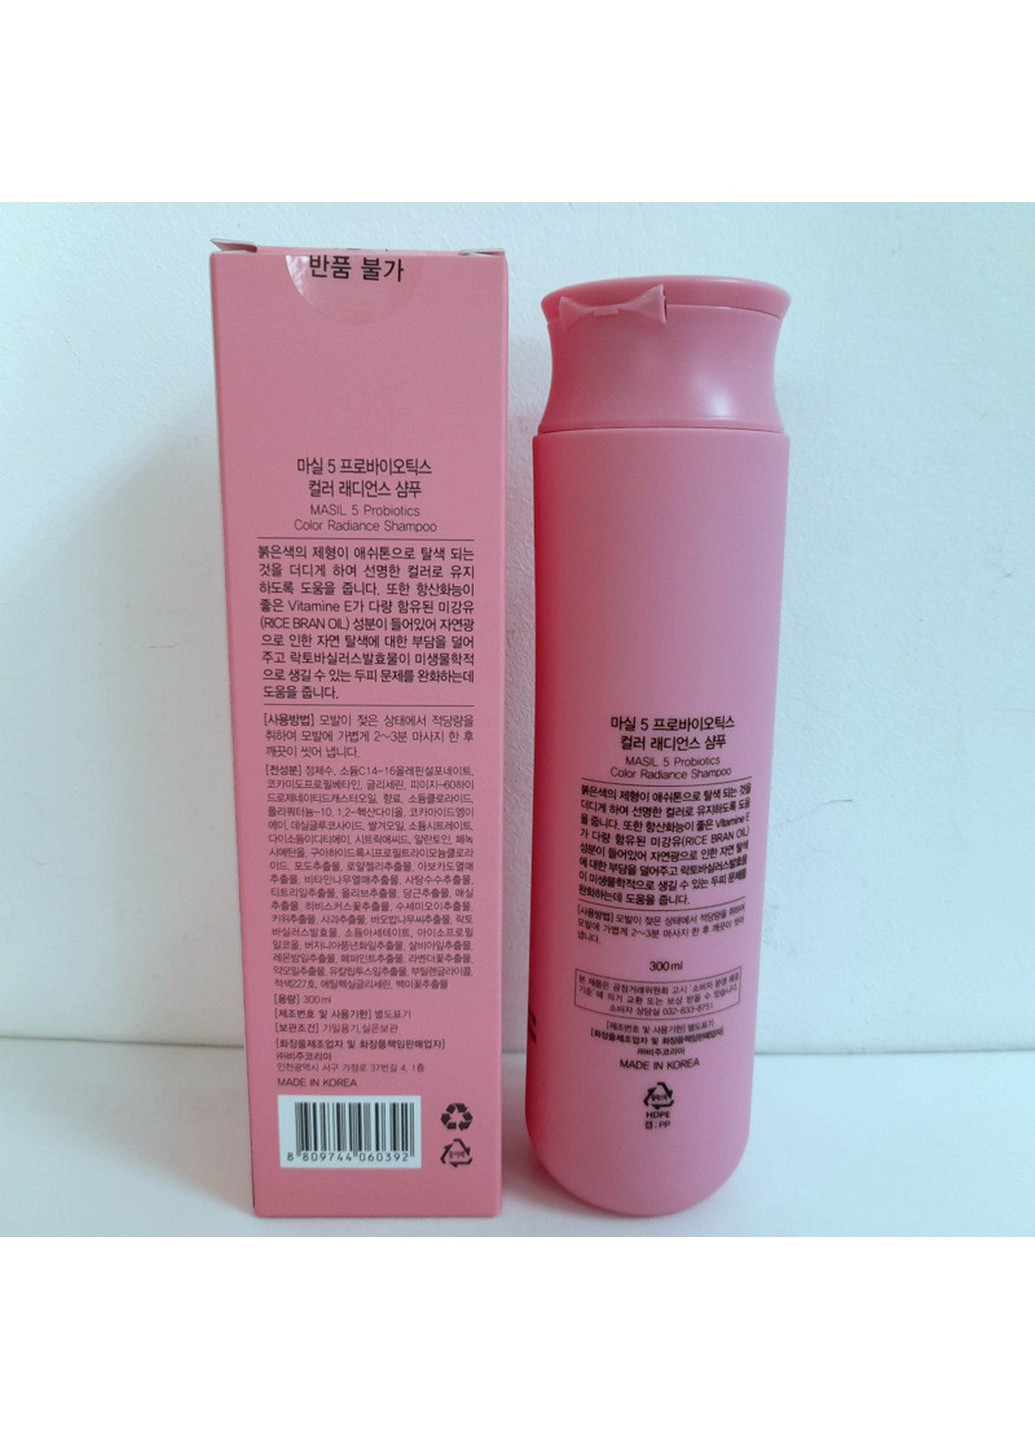 Шампунь із пробіотиками для волосся для захисту кольору 5 Probiotics Color Radiance Shampoo MASIL (254844231)